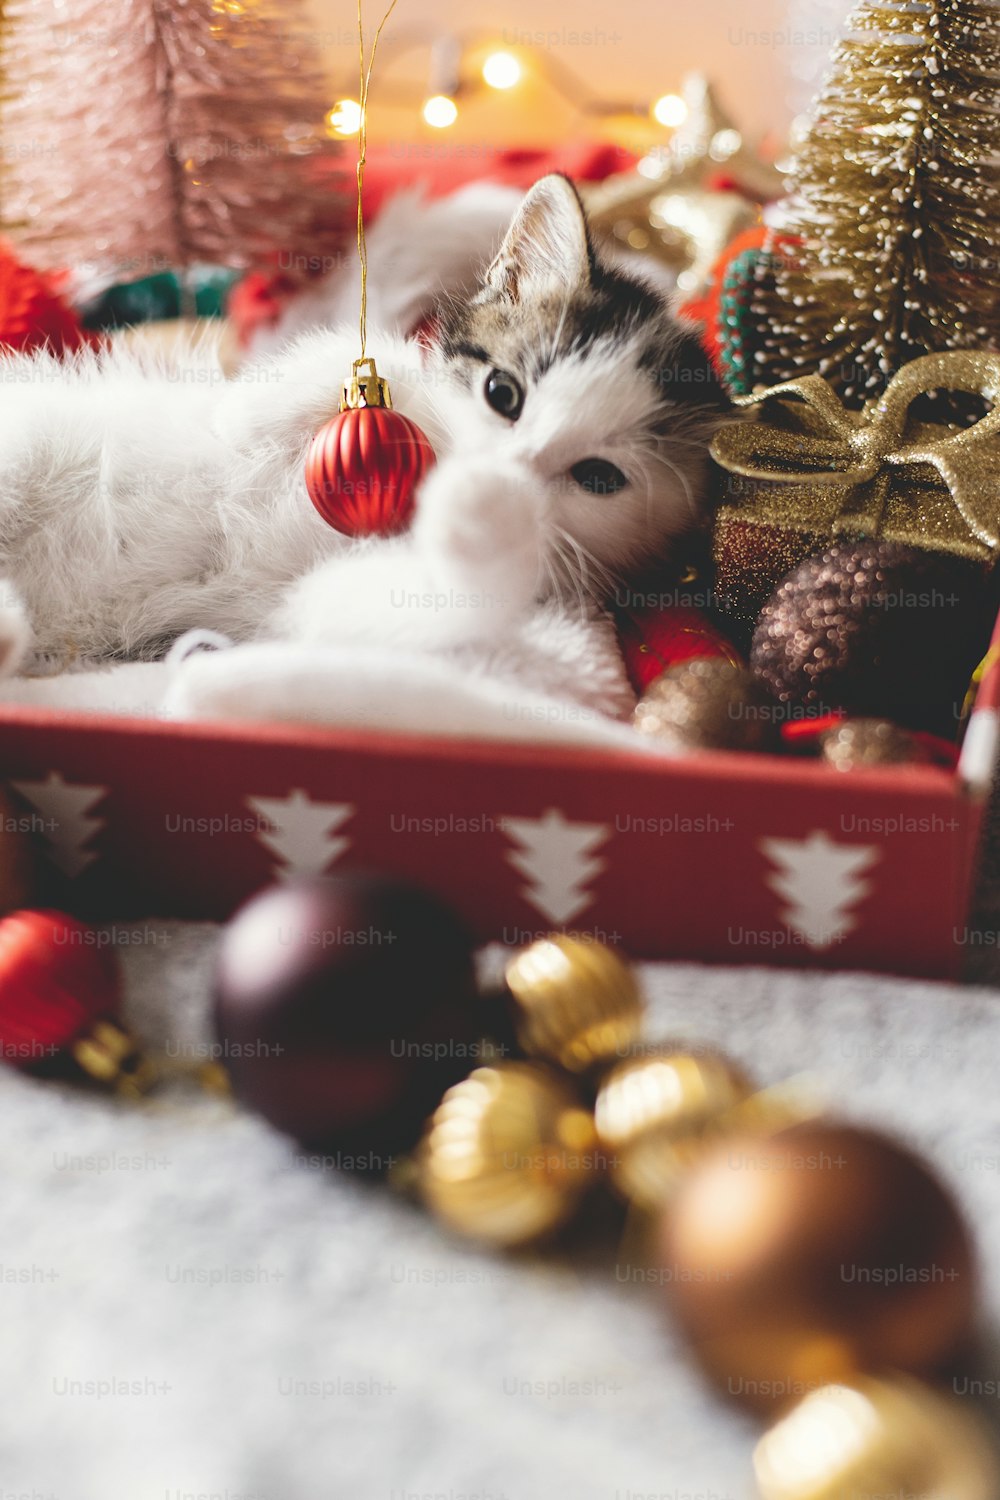 Gatito lindo jugando con adornos rojos de Navidad, acostado en caja con sombrero de Papá Noel en el fondo del árbol de Navidad y adornos en luces de iluminación cálida. ¡Feliz Navidad y Felices Fiestas!